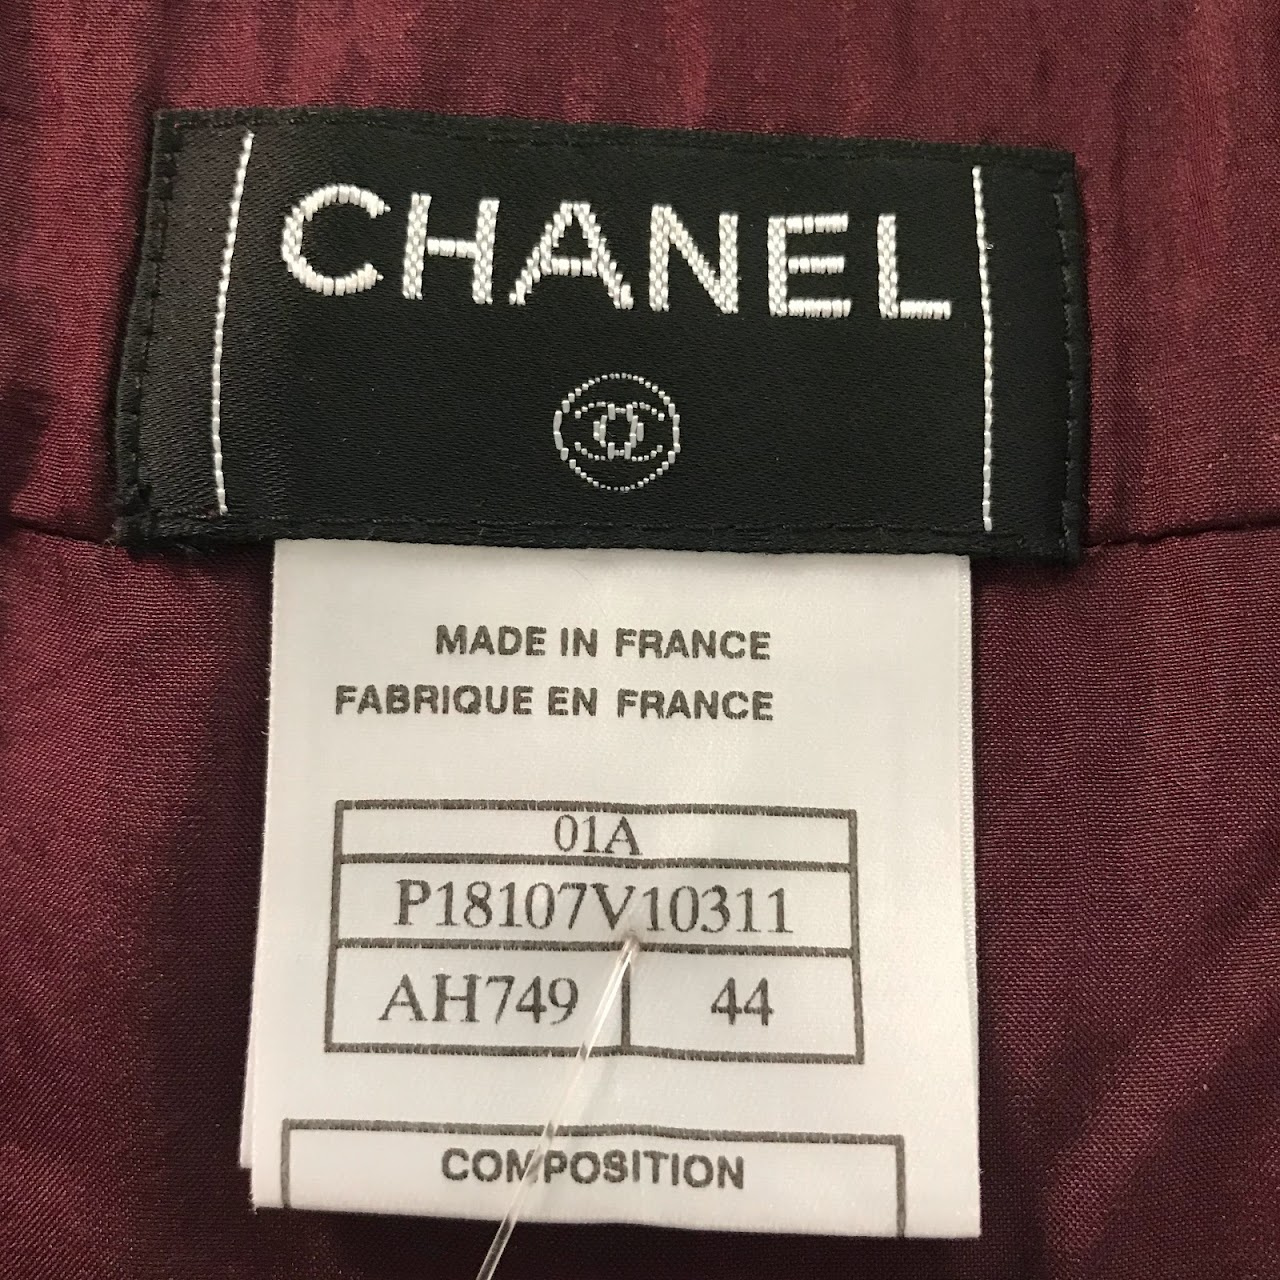 Chanel NEW Pleated Bouclé Skirt